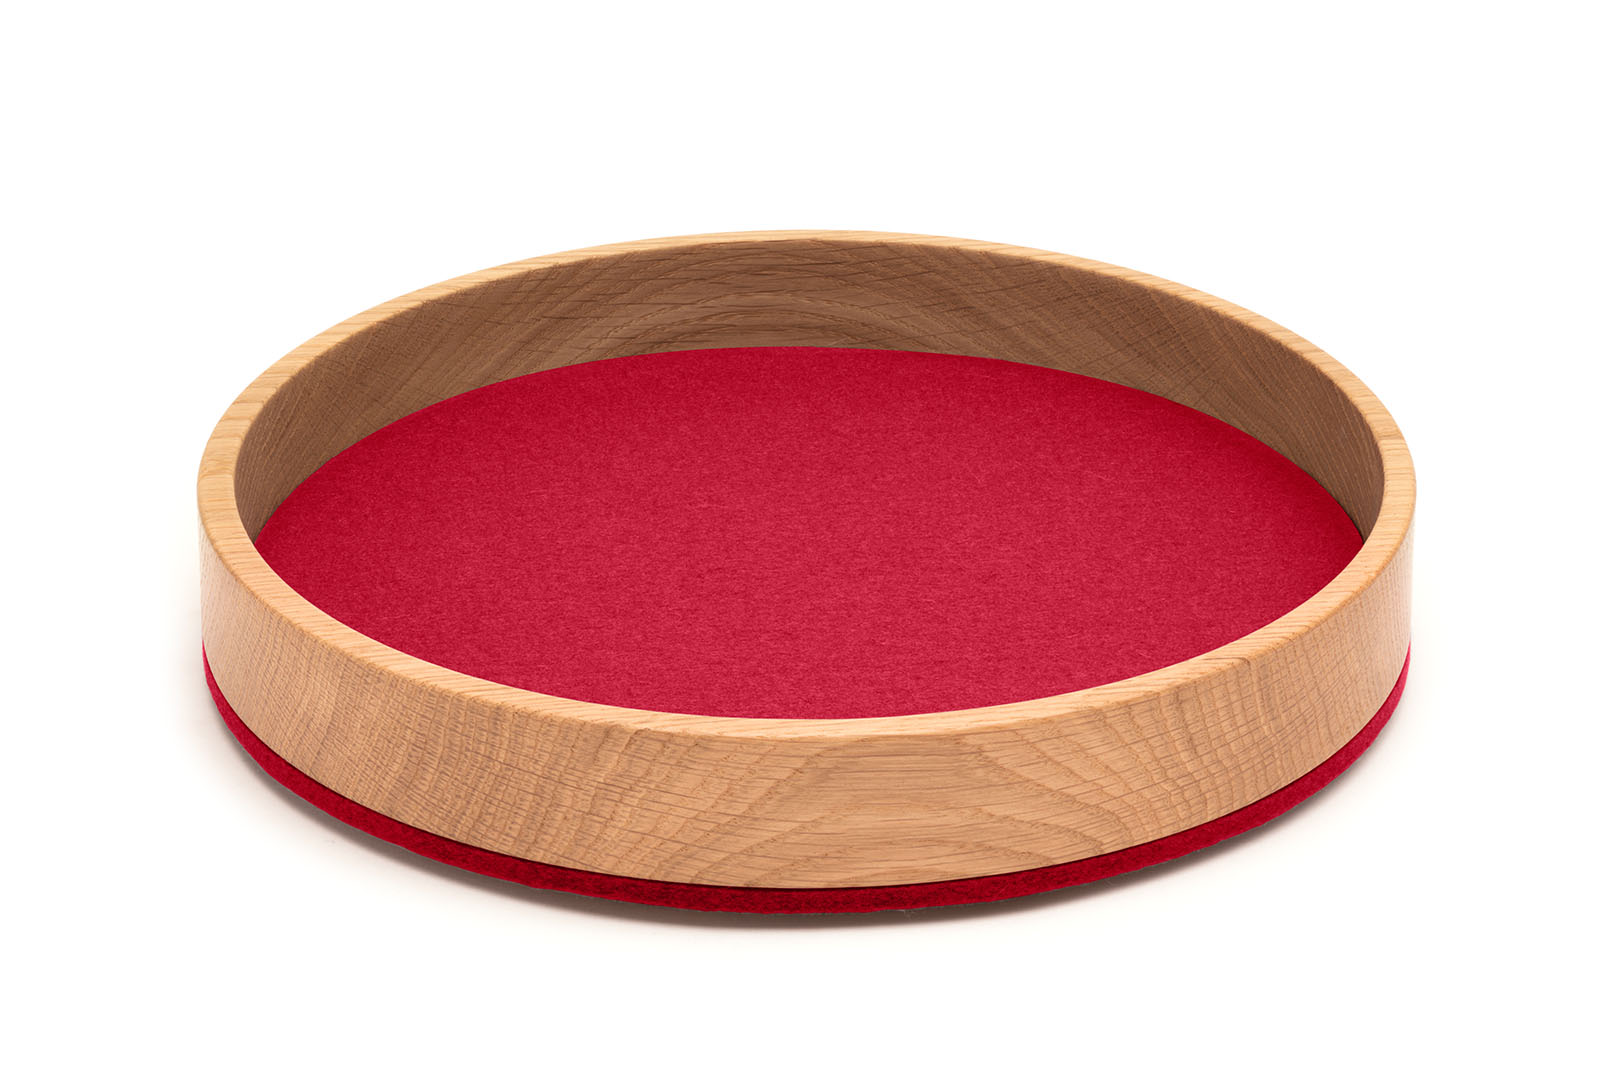 Dein Bowl/ Tray rund (Ø 26,5 cm) in der Farbe "Mohnrot"